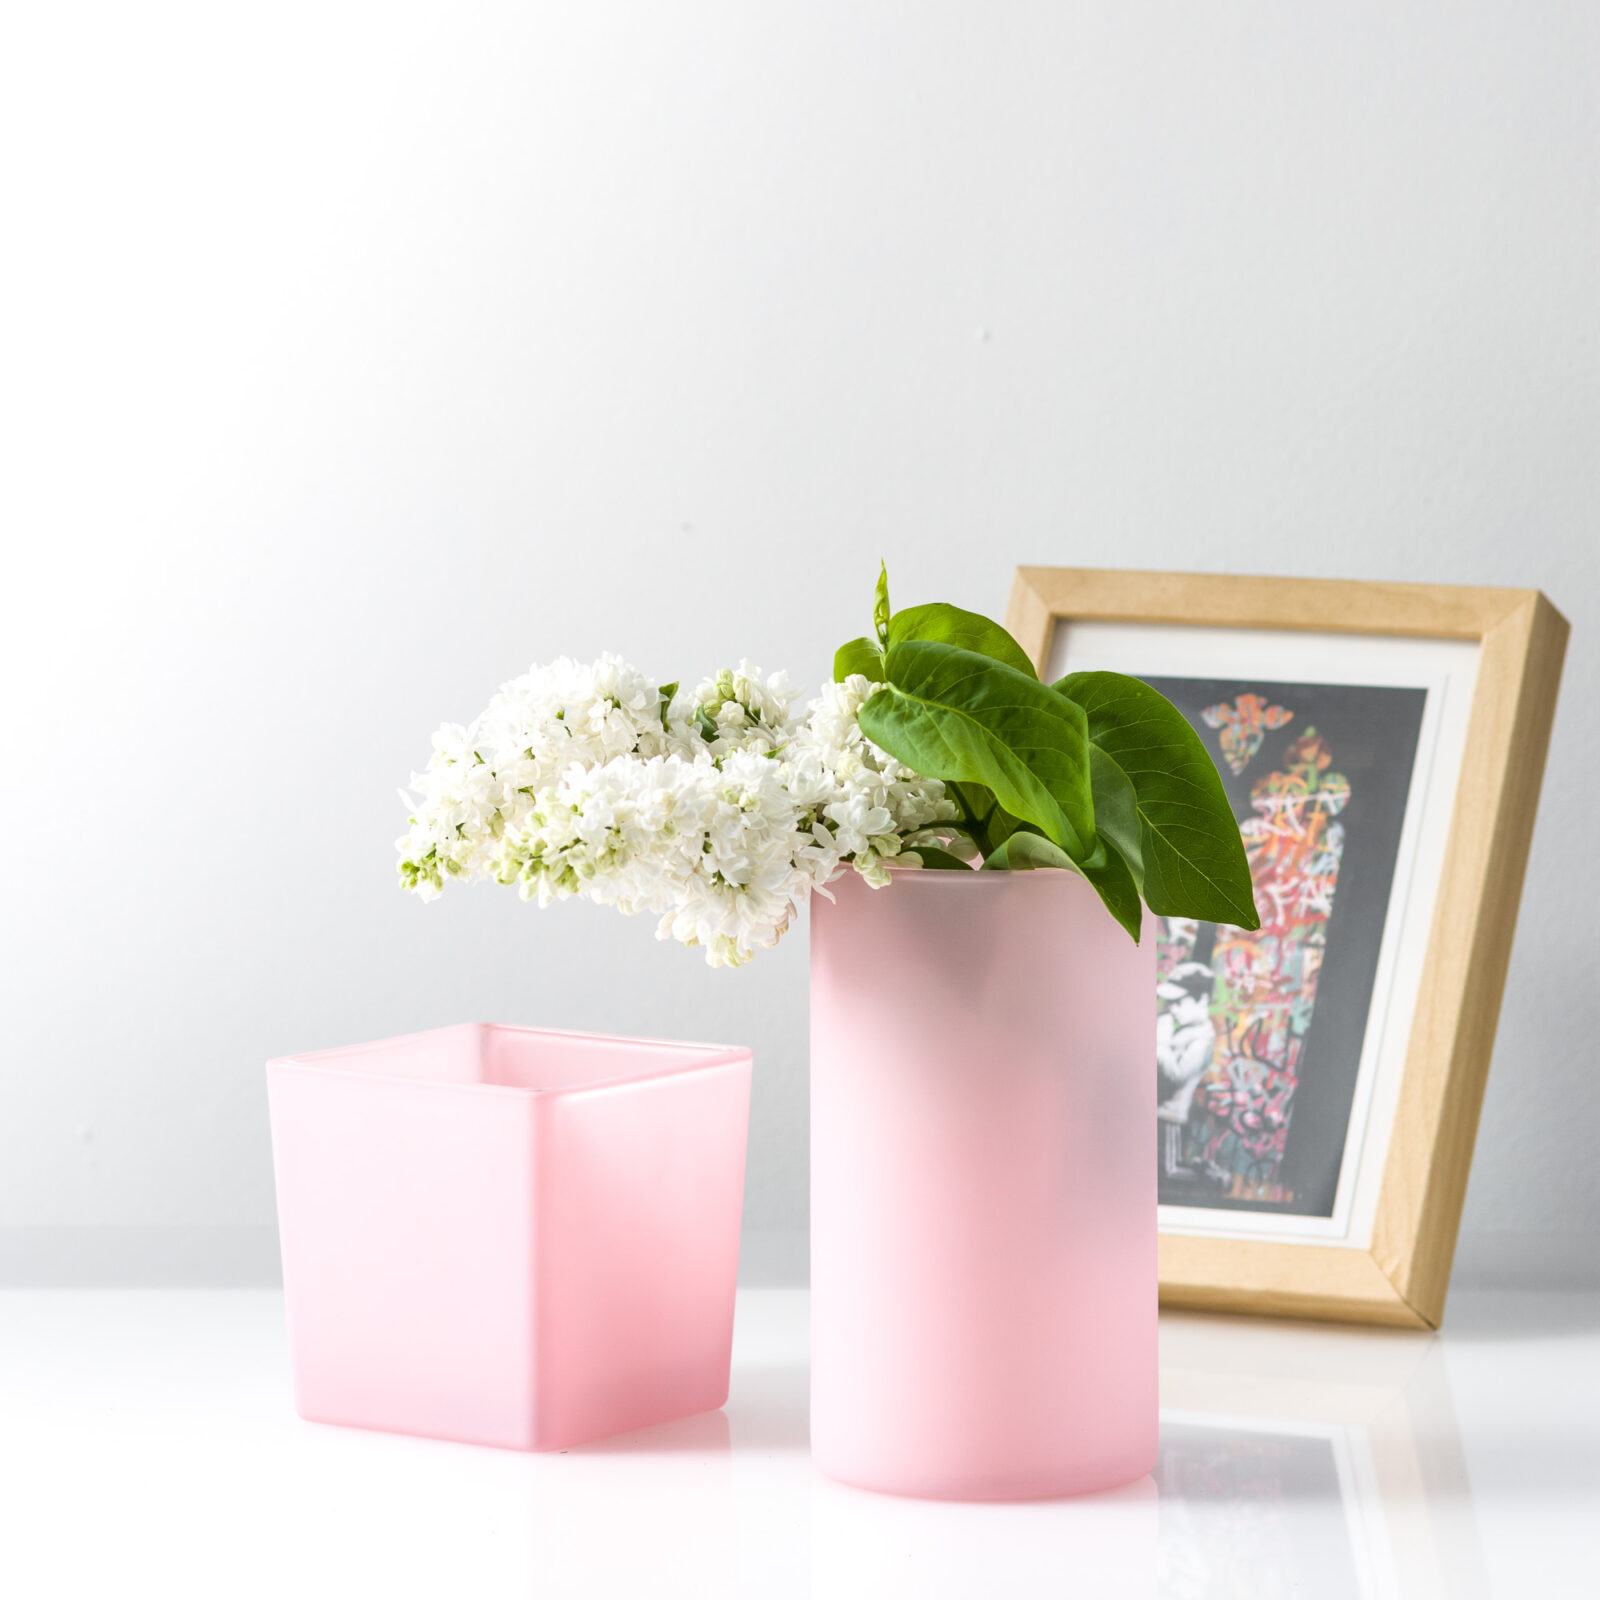 Dekoracja wazony szklane różowe z ramką do zdjęć